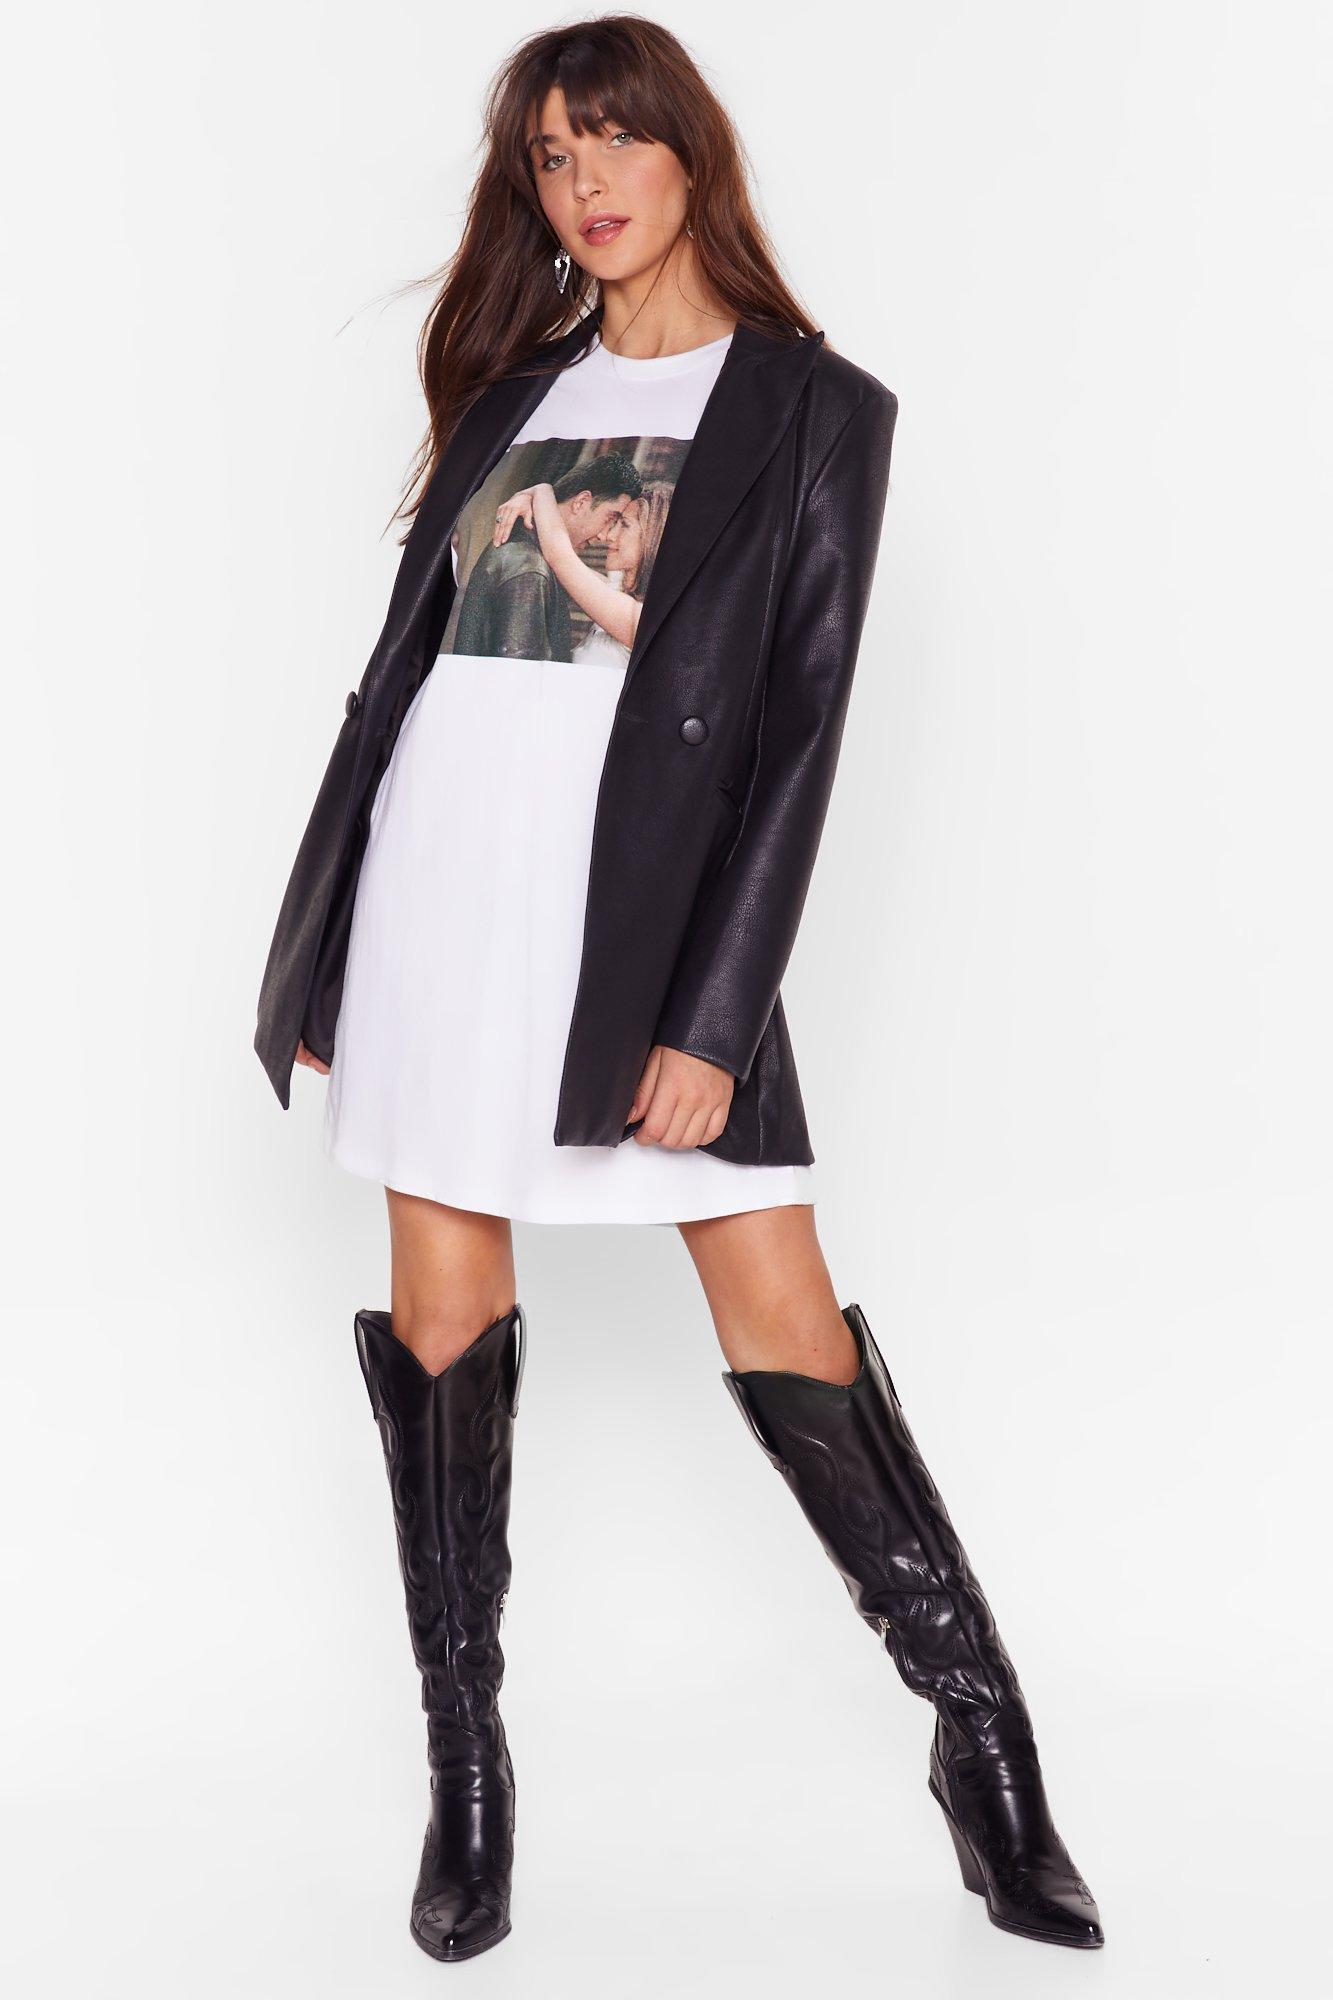 The Rachel Black Faux Leather T-shirt Dress